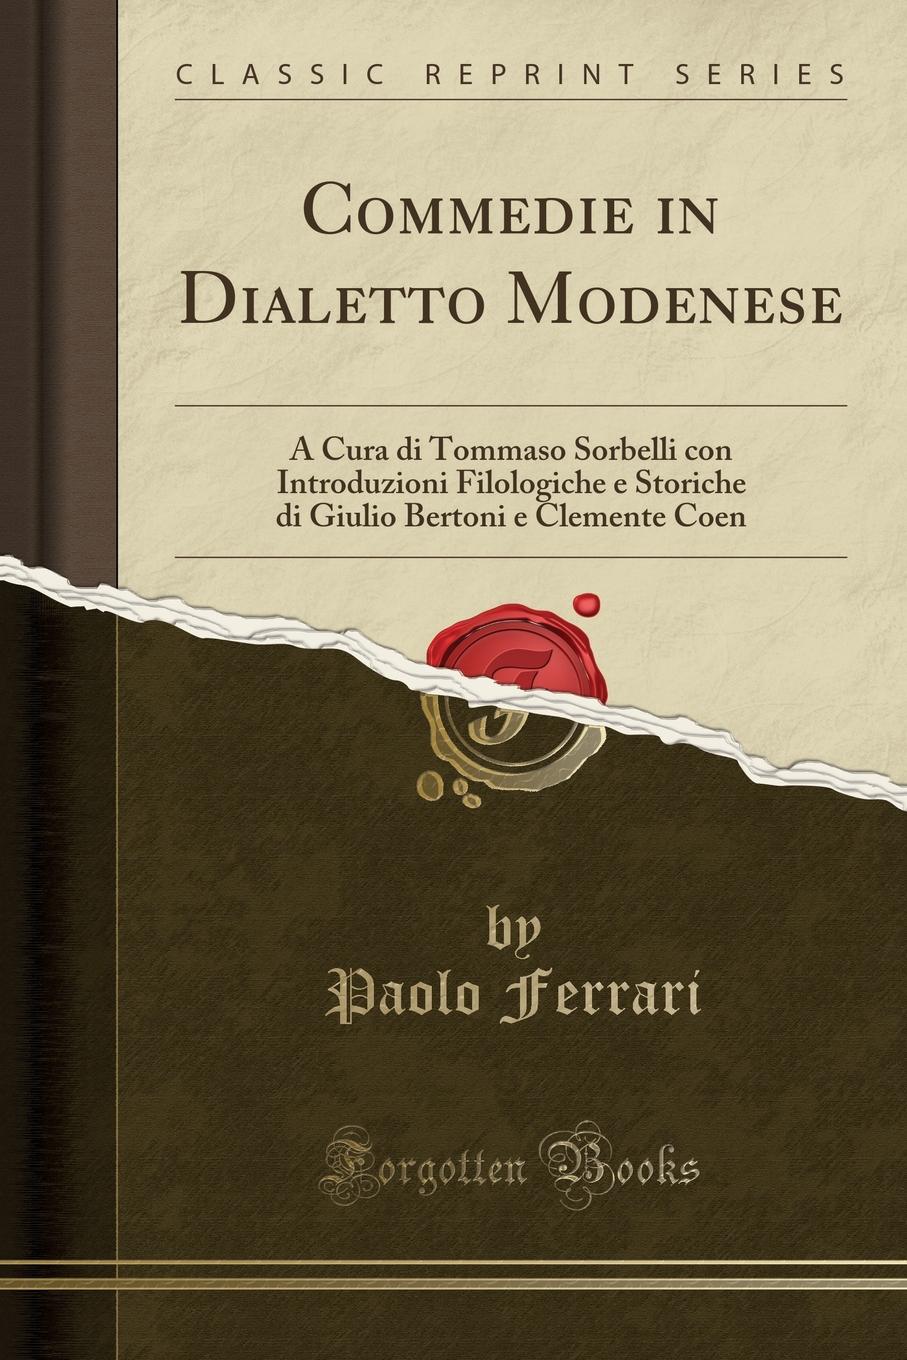 Commedie in Dialetto Modenese. A Cura di Tommaso Sorbelli con Introduzioni Filologiche e Storiche di Giulio Bertoni e Clemente Coen (Classic Reprint)